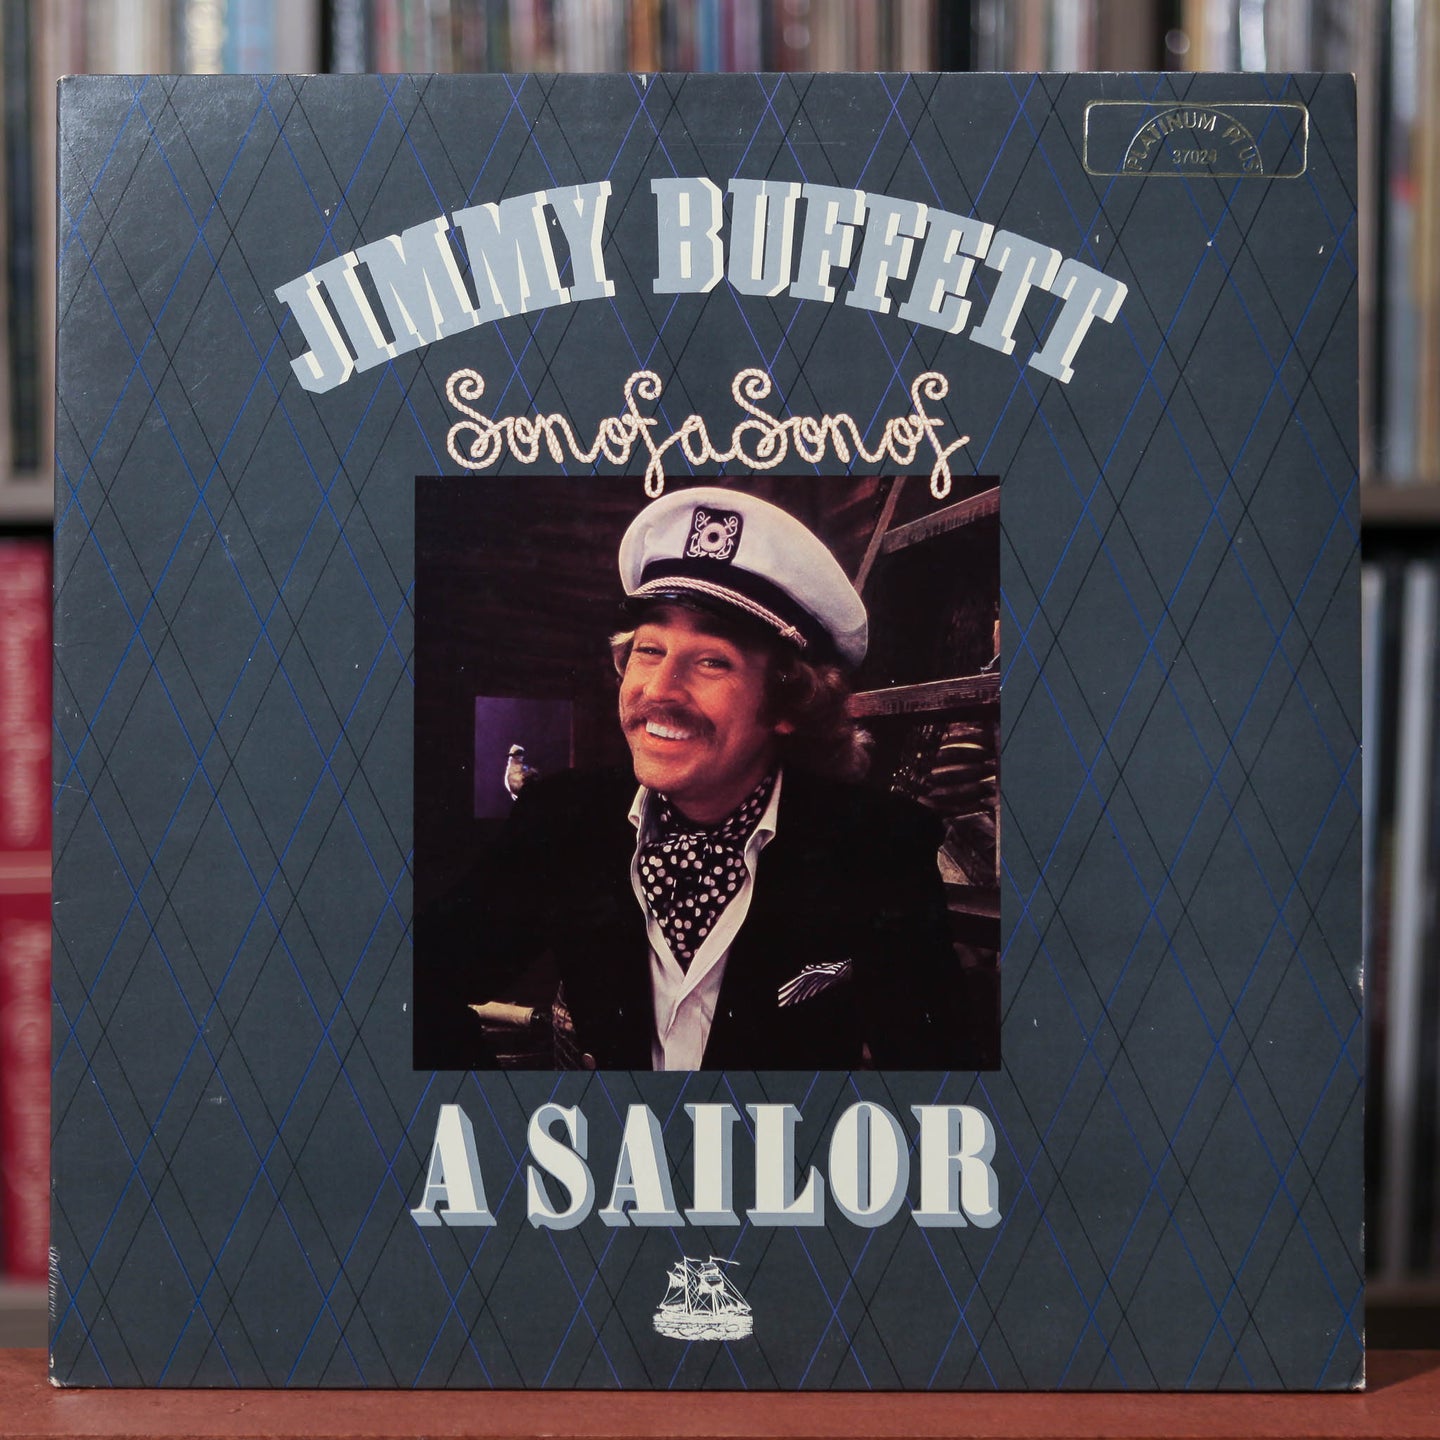 Jimmy Buffett - Son of a Son of a Sailor - 1978 ABC, VG+/EX